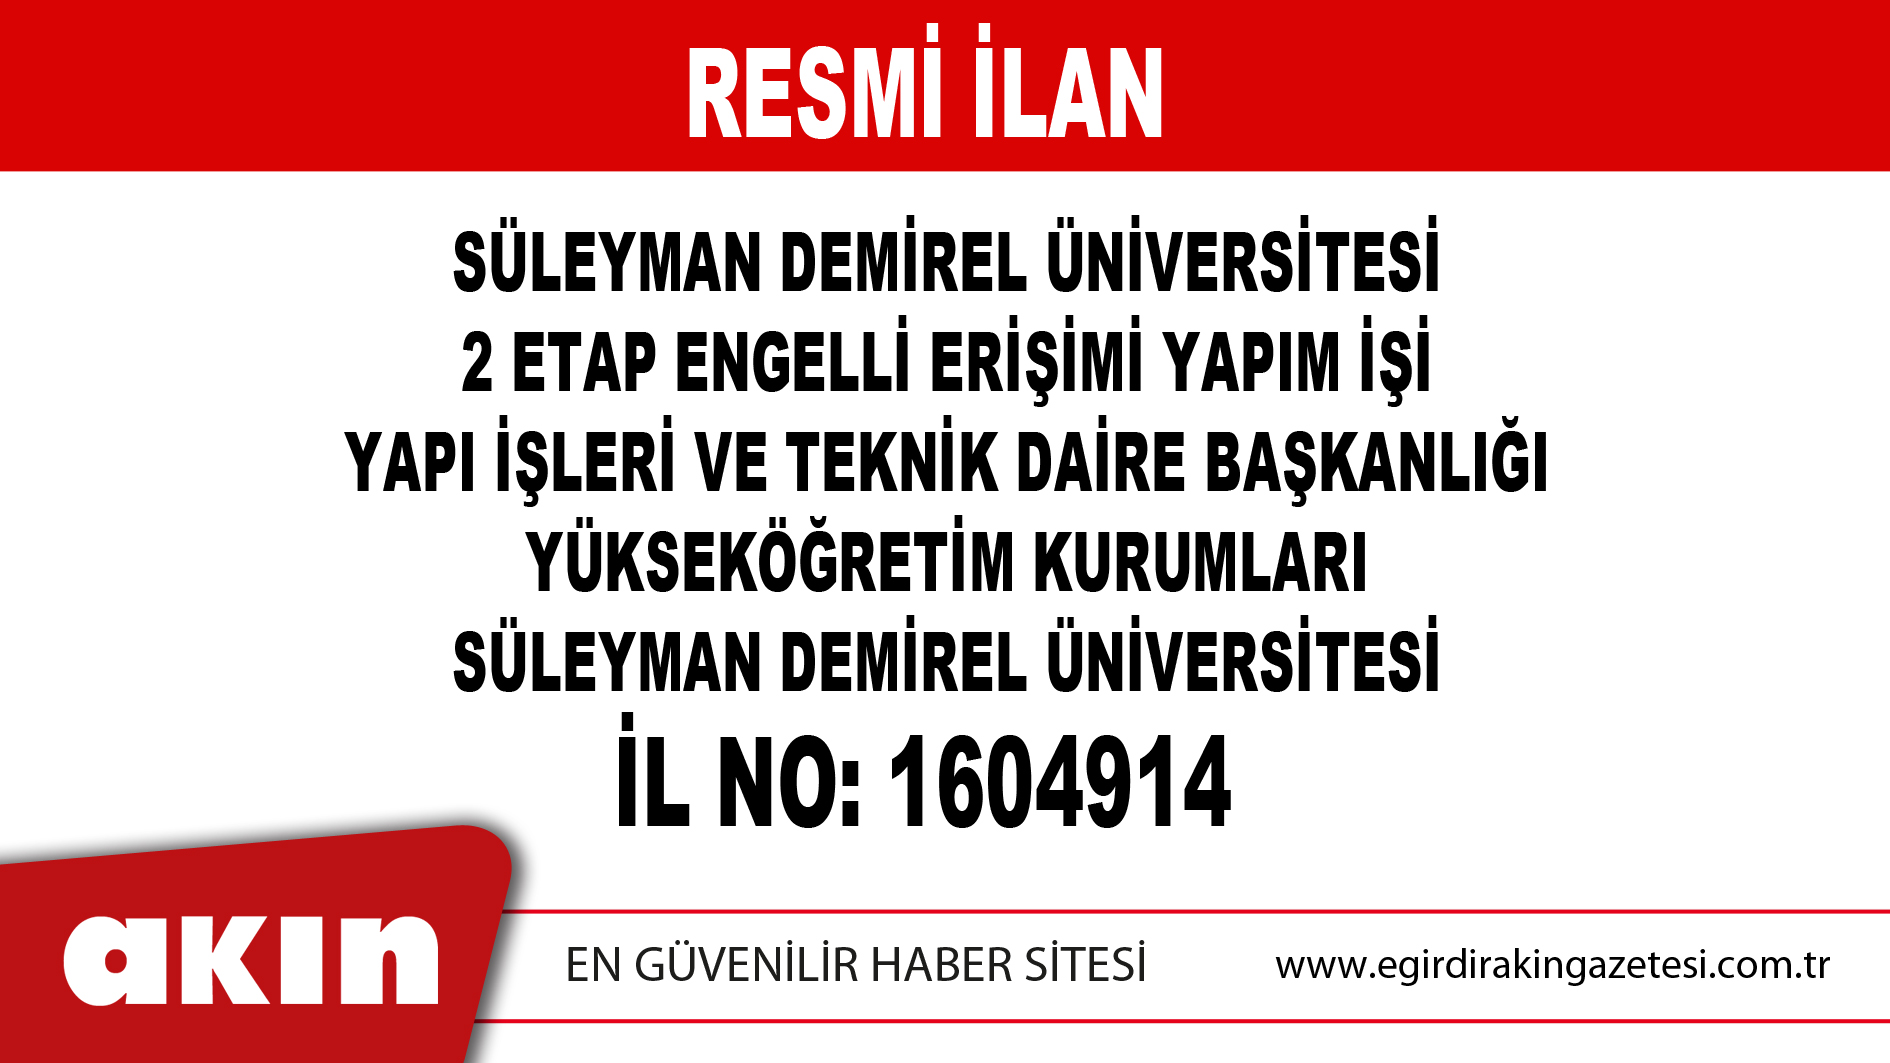 Süleyman Demirel Üniversitesi 2 Etap Engelli Erişimi Yapım İşi